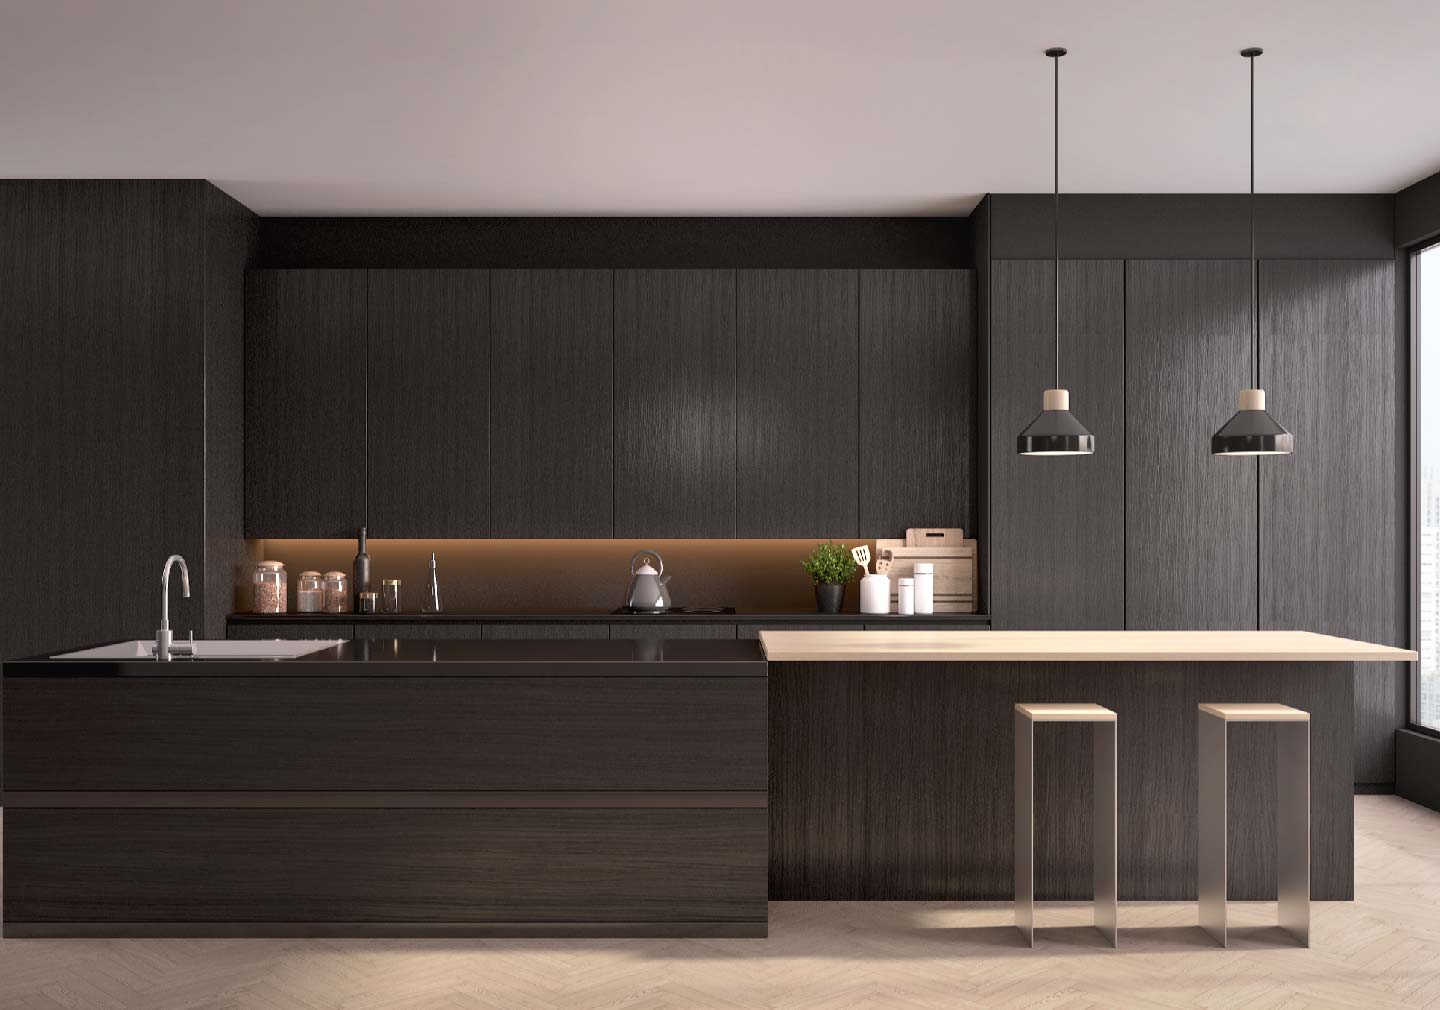 dark theme modern kitchen interior designs